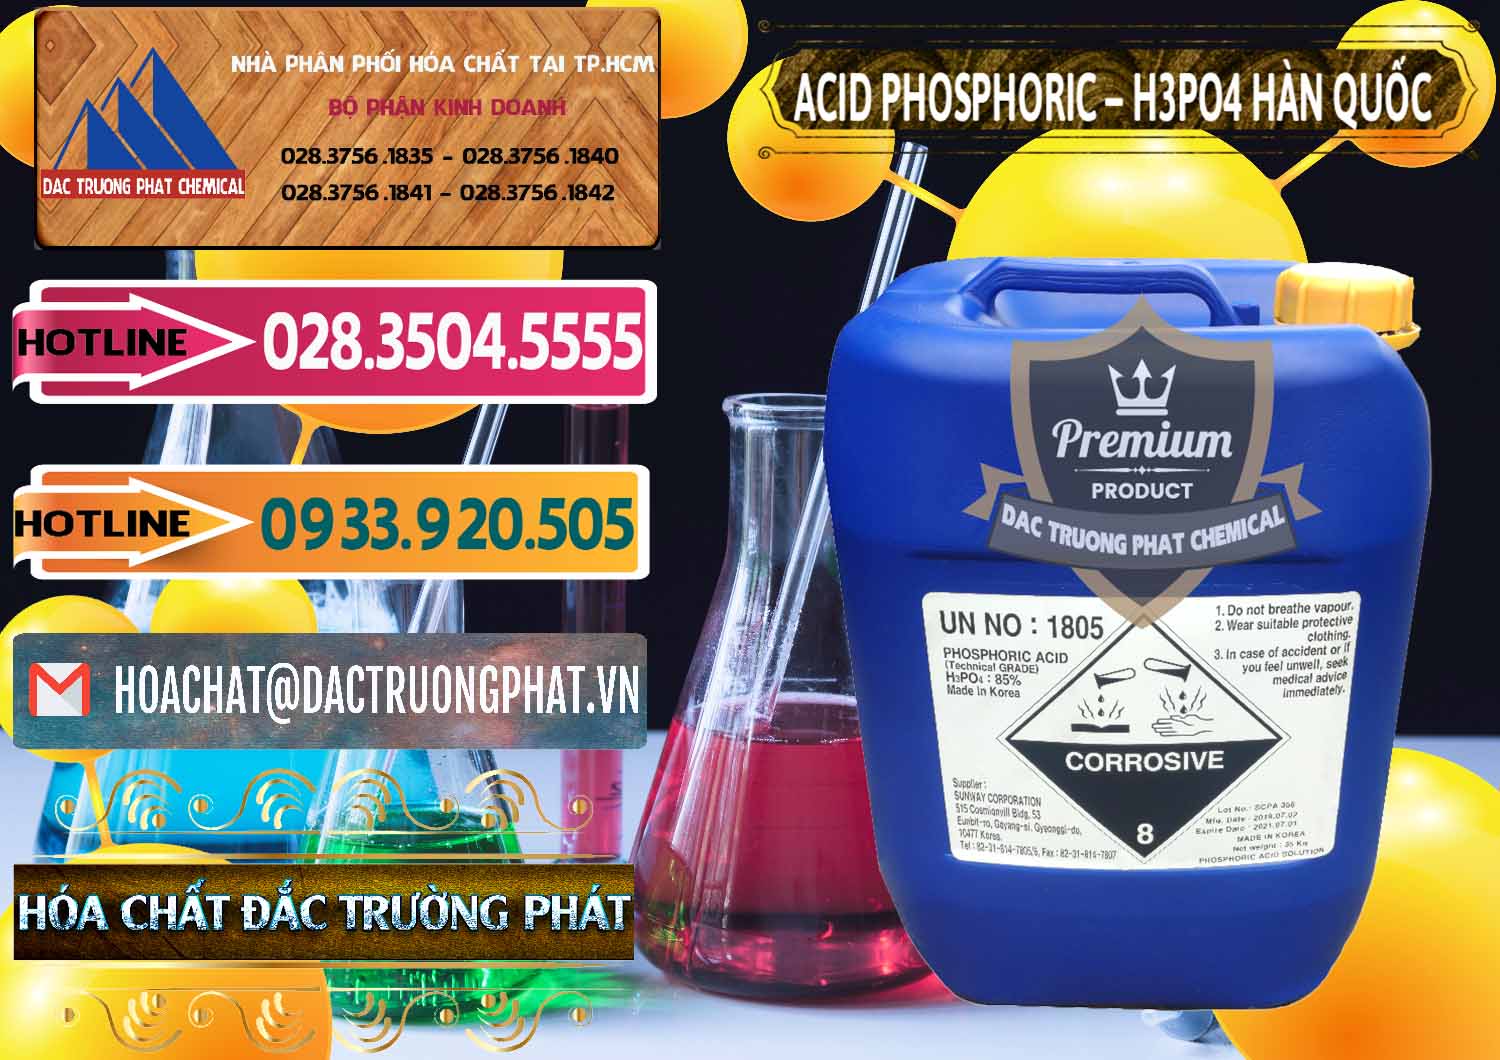 Đơn vị chuyên bán - cung ứng Acid Phosphoric – H3PO4 85% Can Xanh Hàn Quốc Korea - 0016 - Bán - phân phối hóa chất tại TP.HCM - dactruongphat.vn